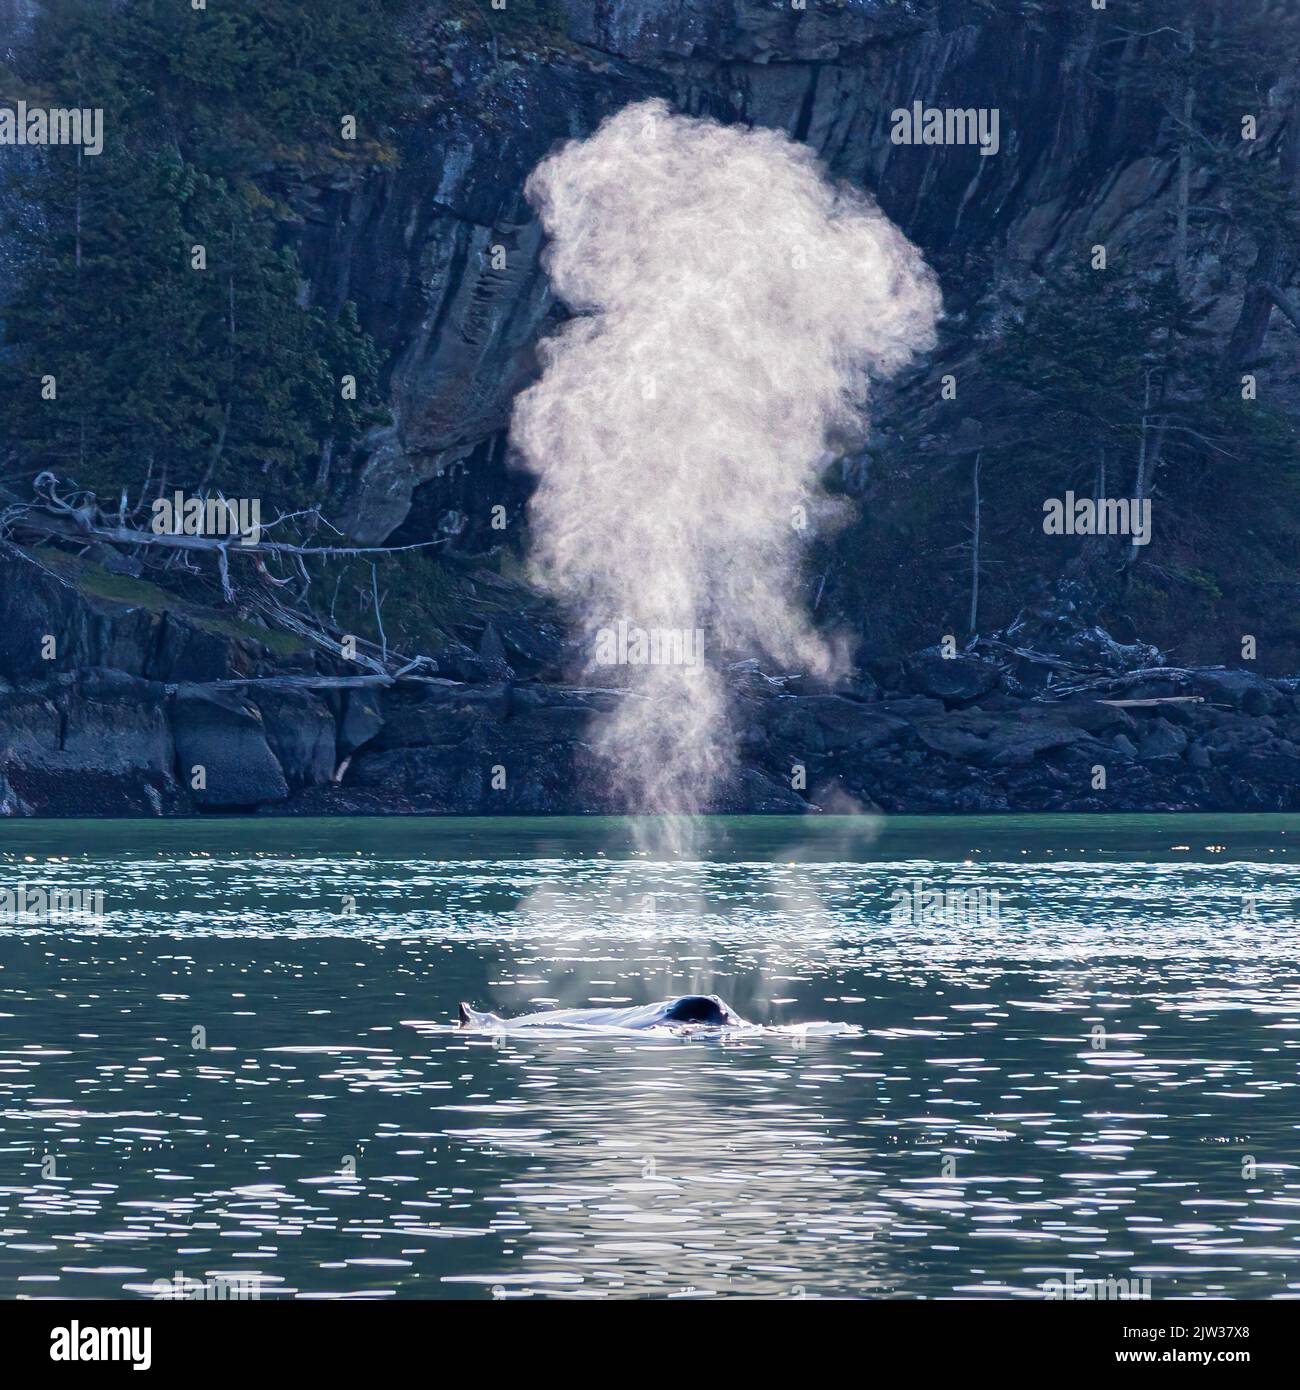 Da bläst sie. Dieser wandernde Buckelwal vor Victoria, Kanada, hatte ein Kalb bei sich. Stockfoto